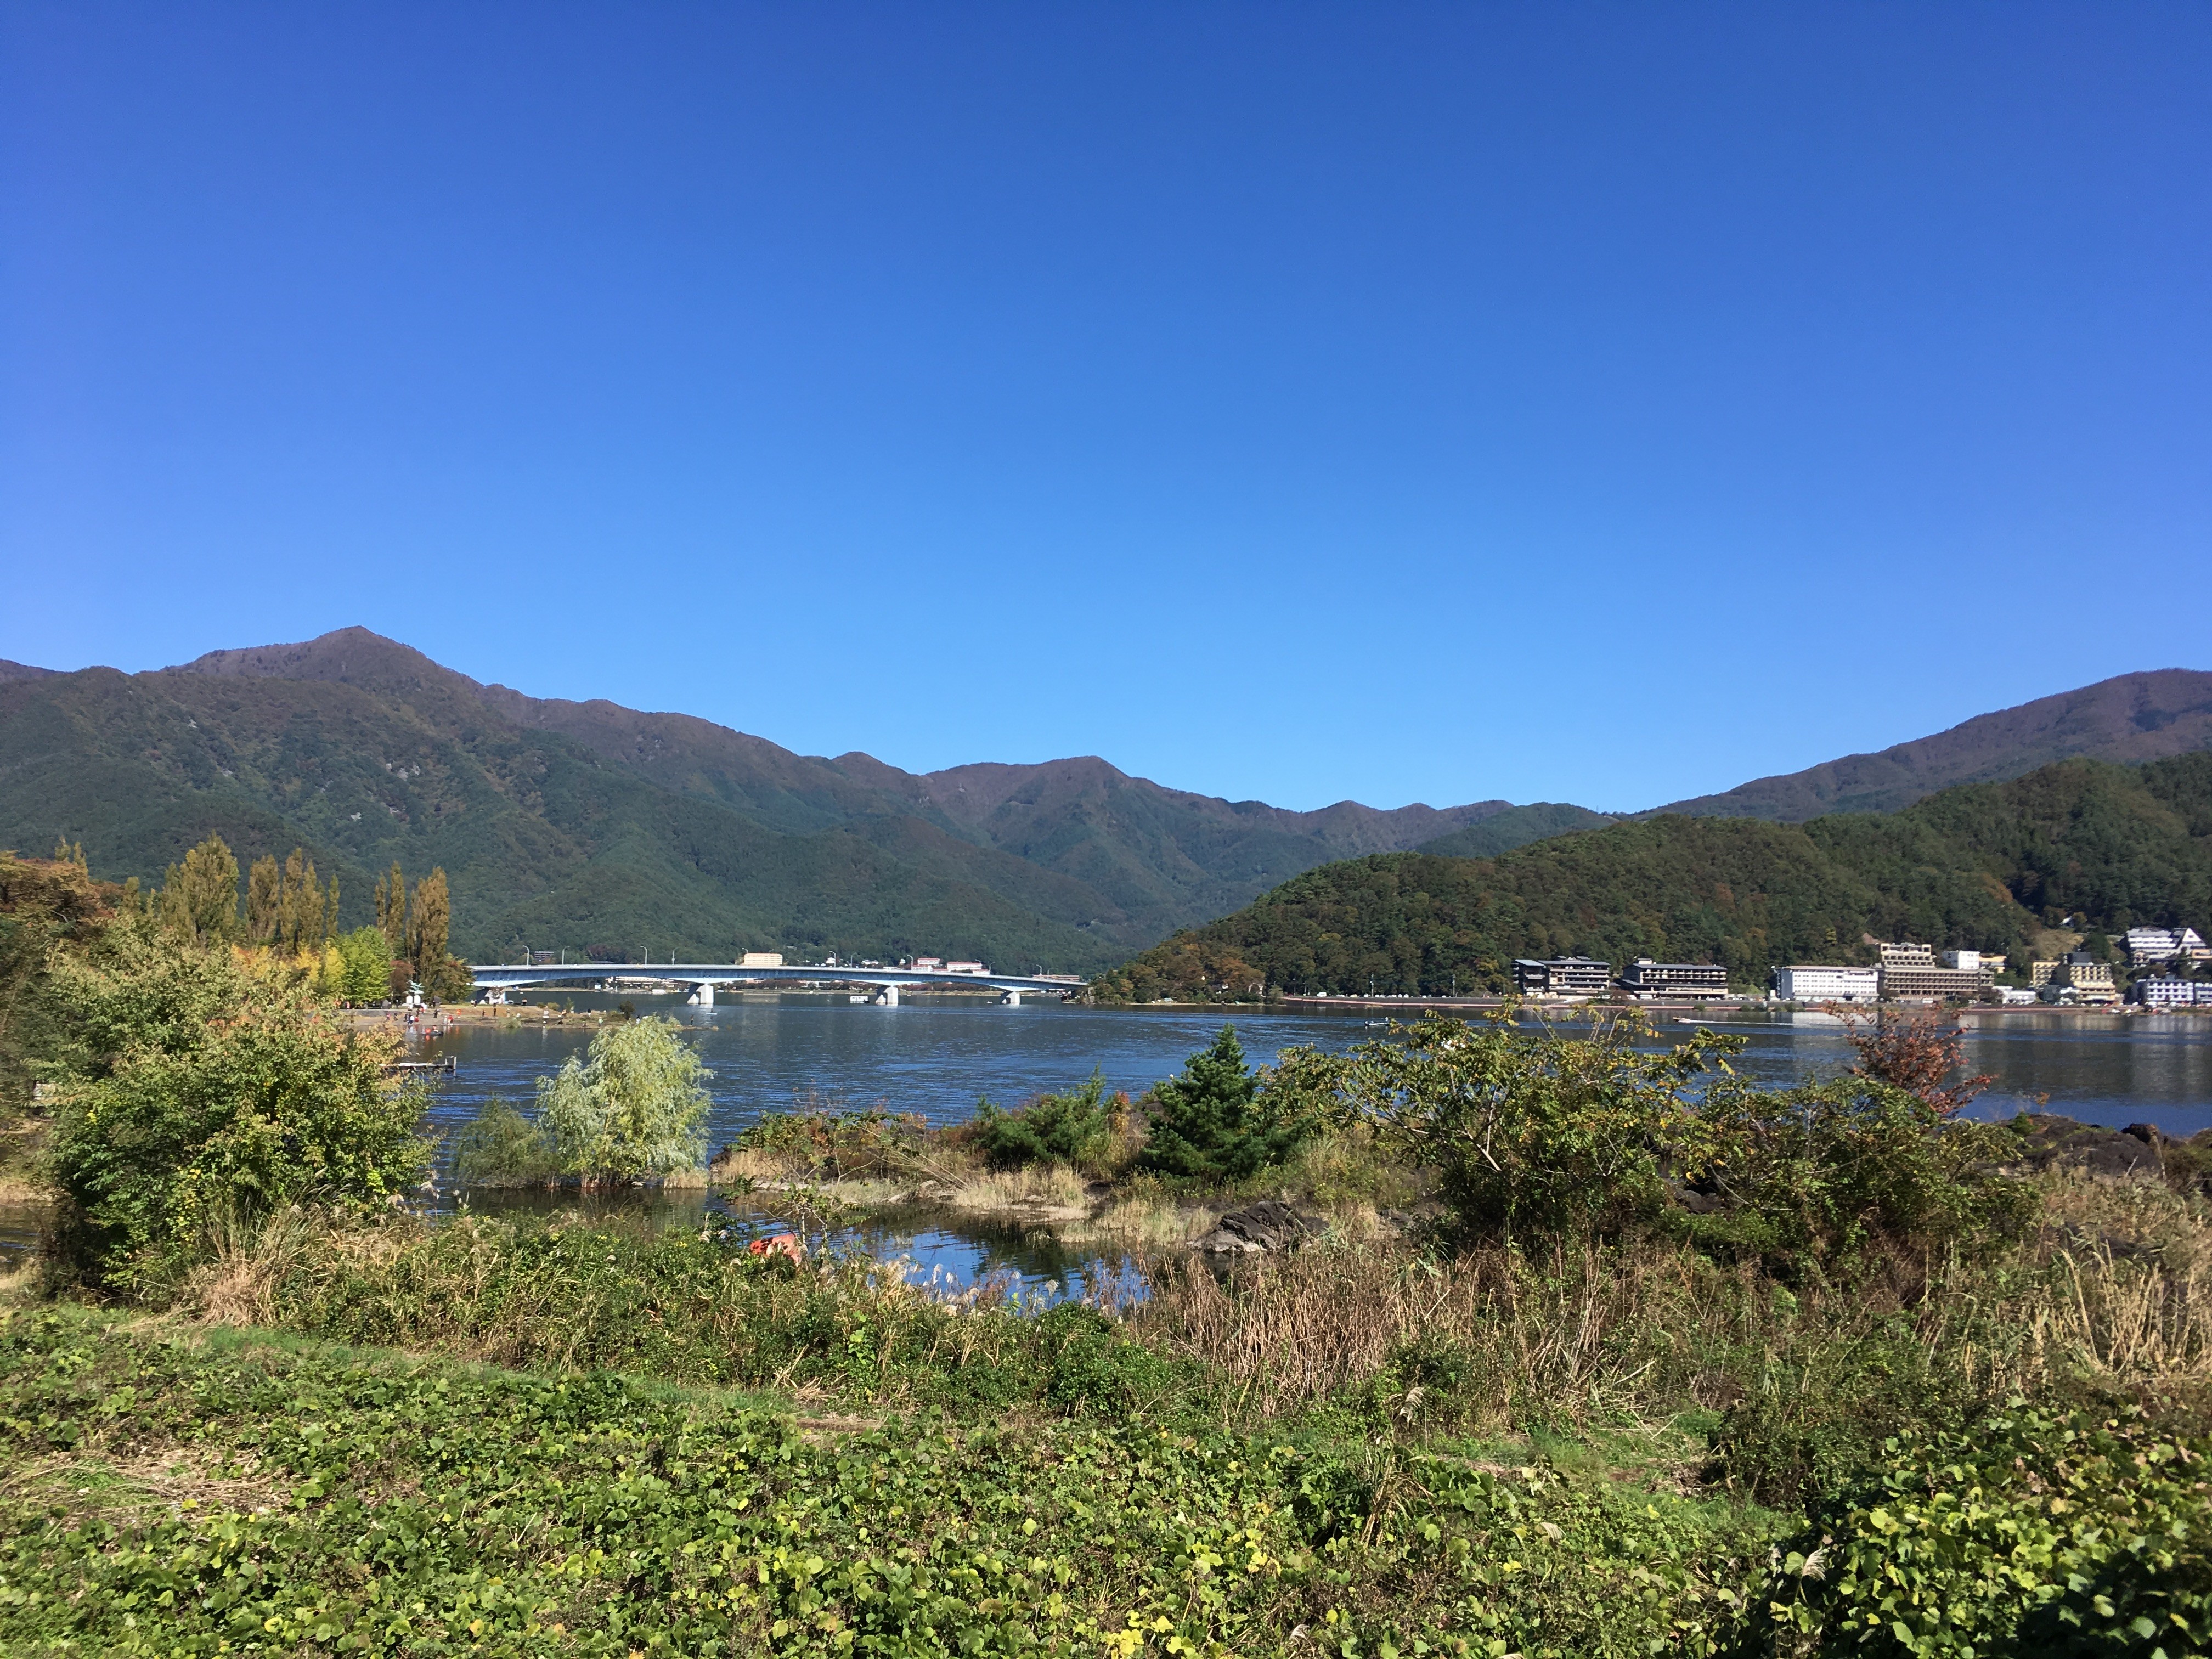 印傳館 山澄園からの湖畔の景観